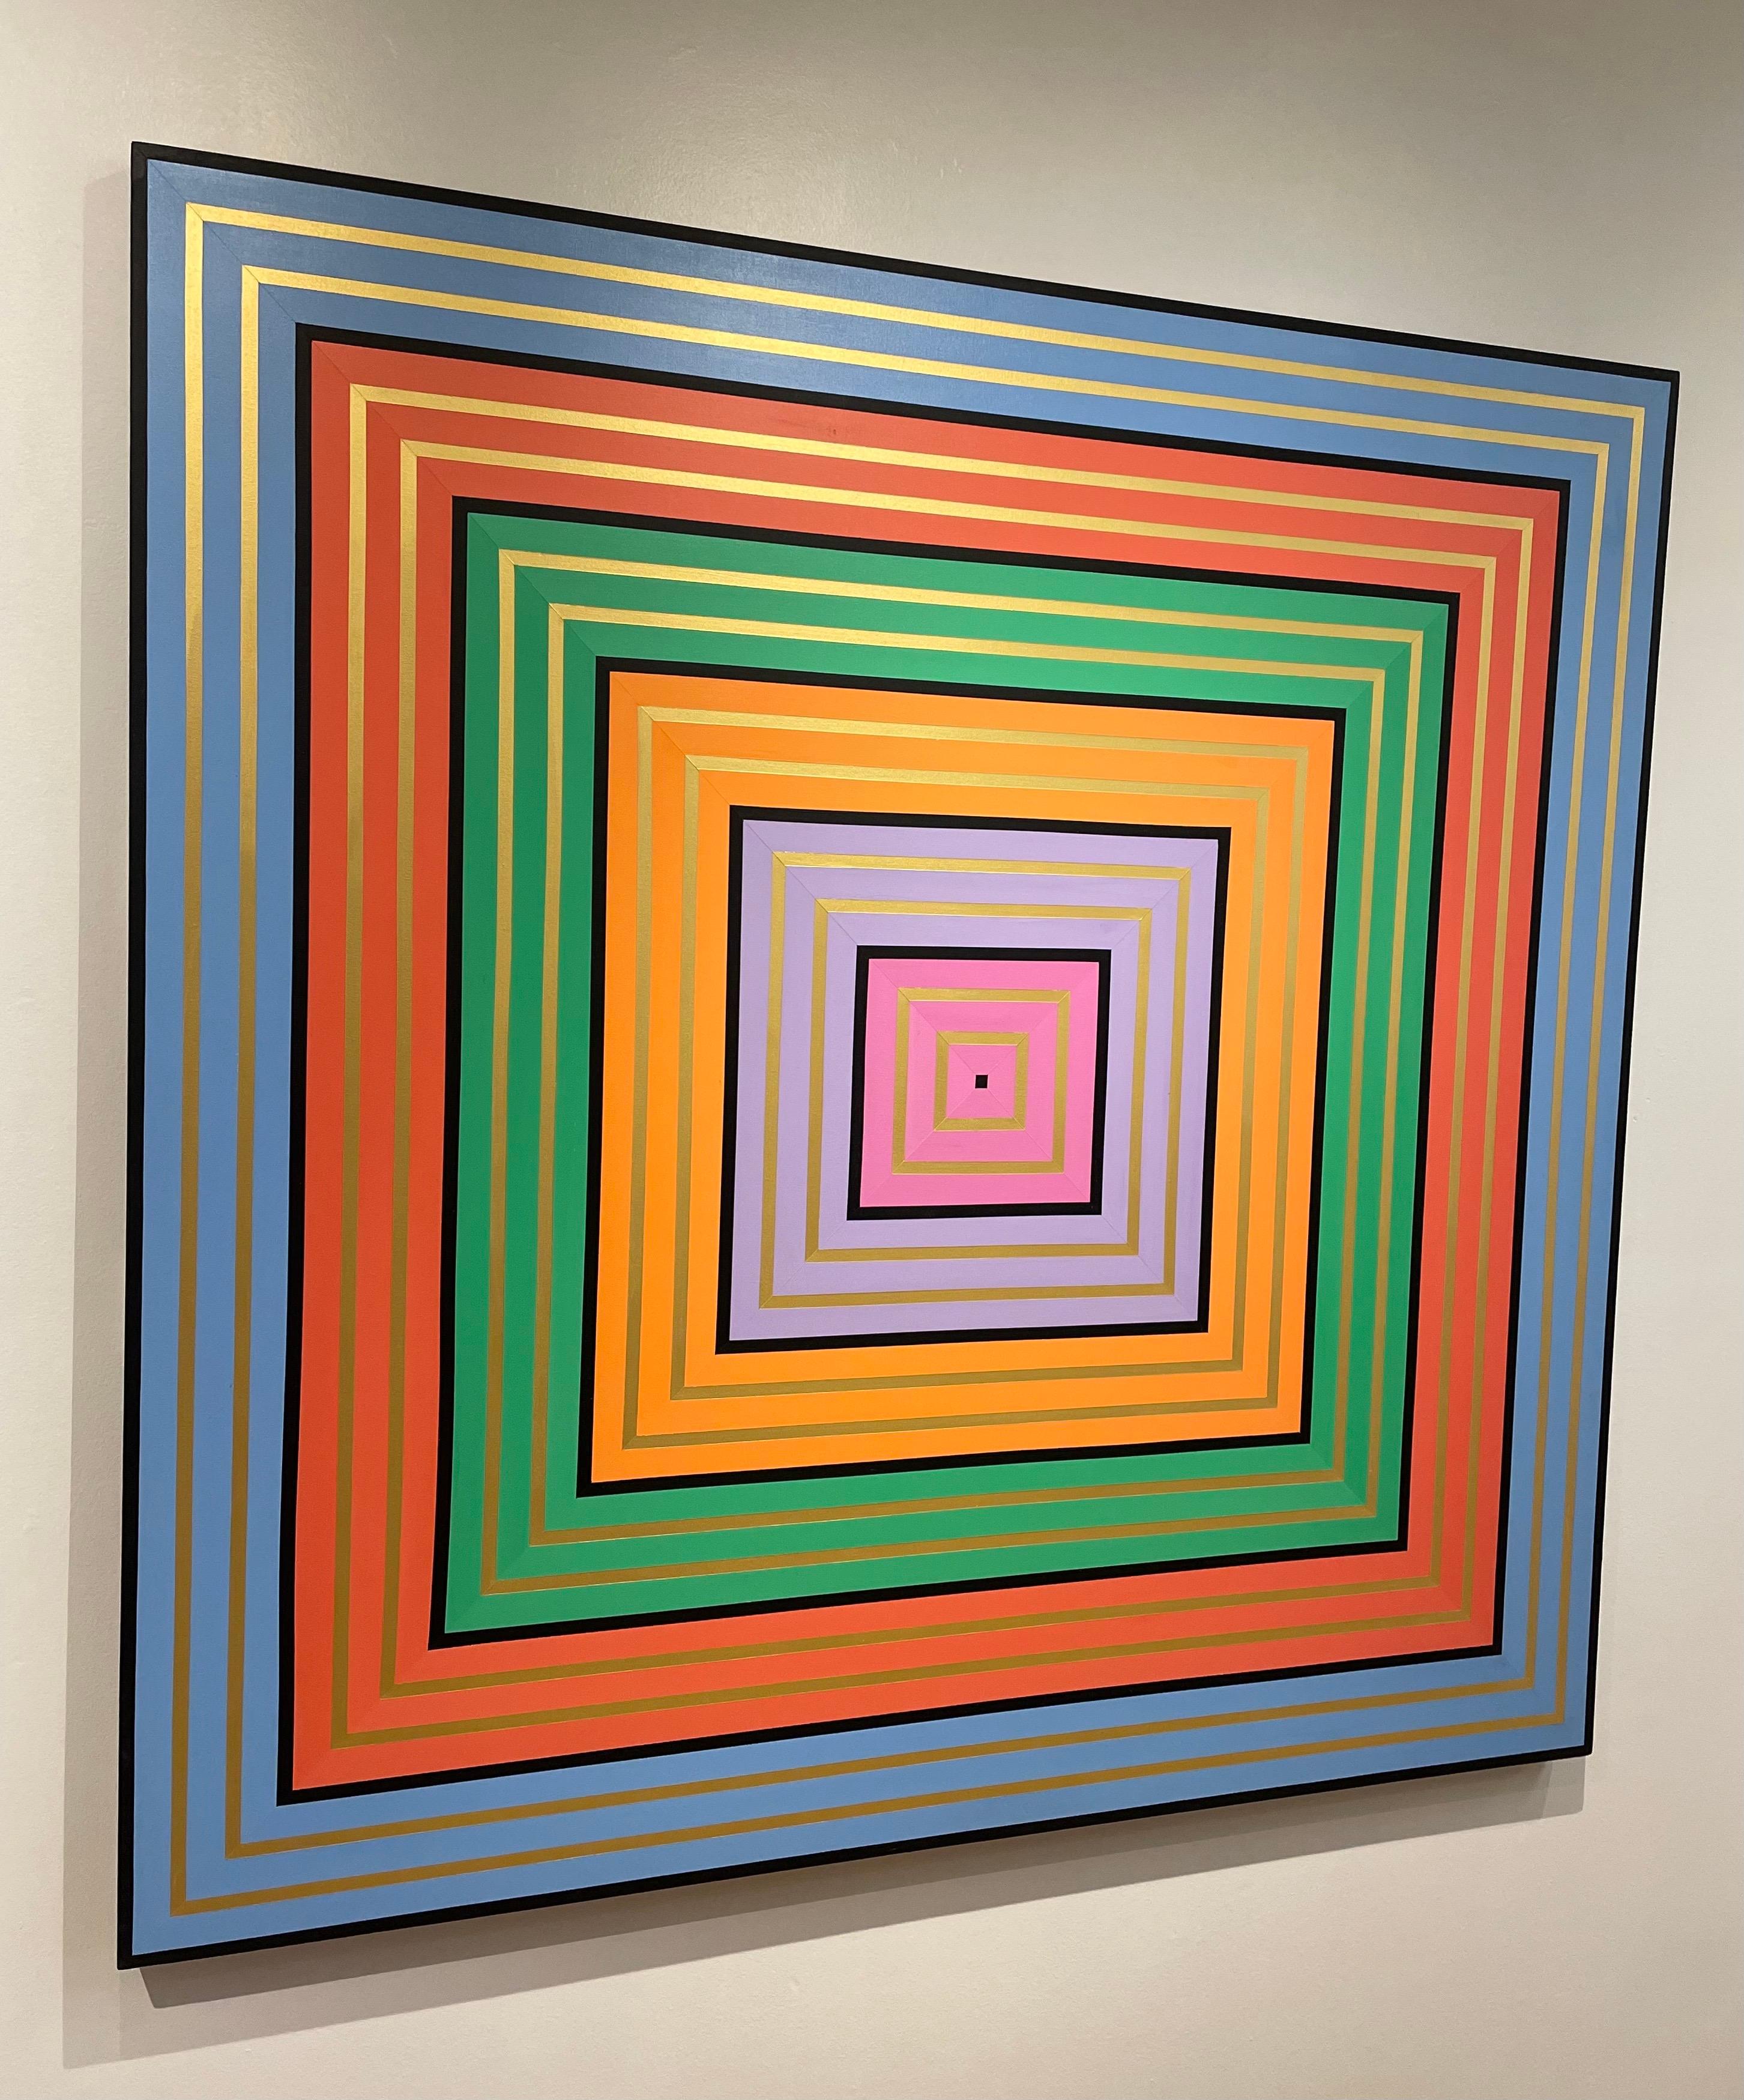 Schöne Farben und tolle Technik auf diesem auffälligen geometrischen Acryl auf Leinwand von San Diego Künstler Allen Perrier circa 2012. Großes Format.